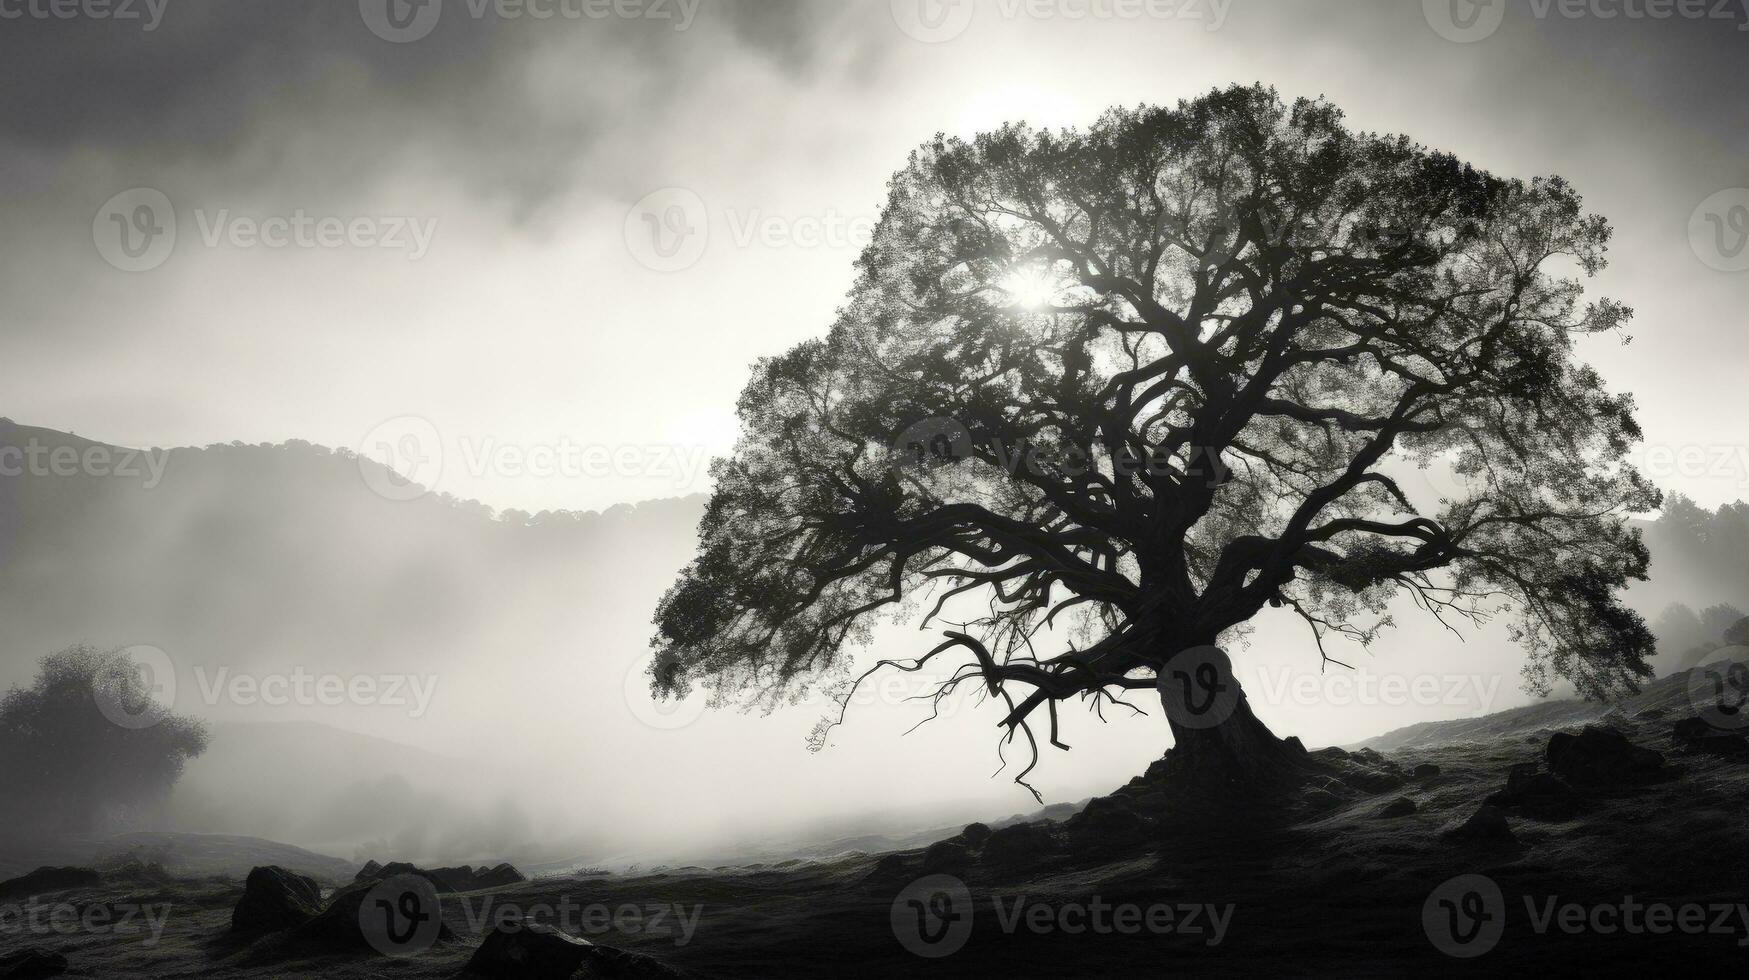 svartvit bild av en enorm ek träd på en dimmig kalifornien backe på soluppgång. silhuett begrepp foto